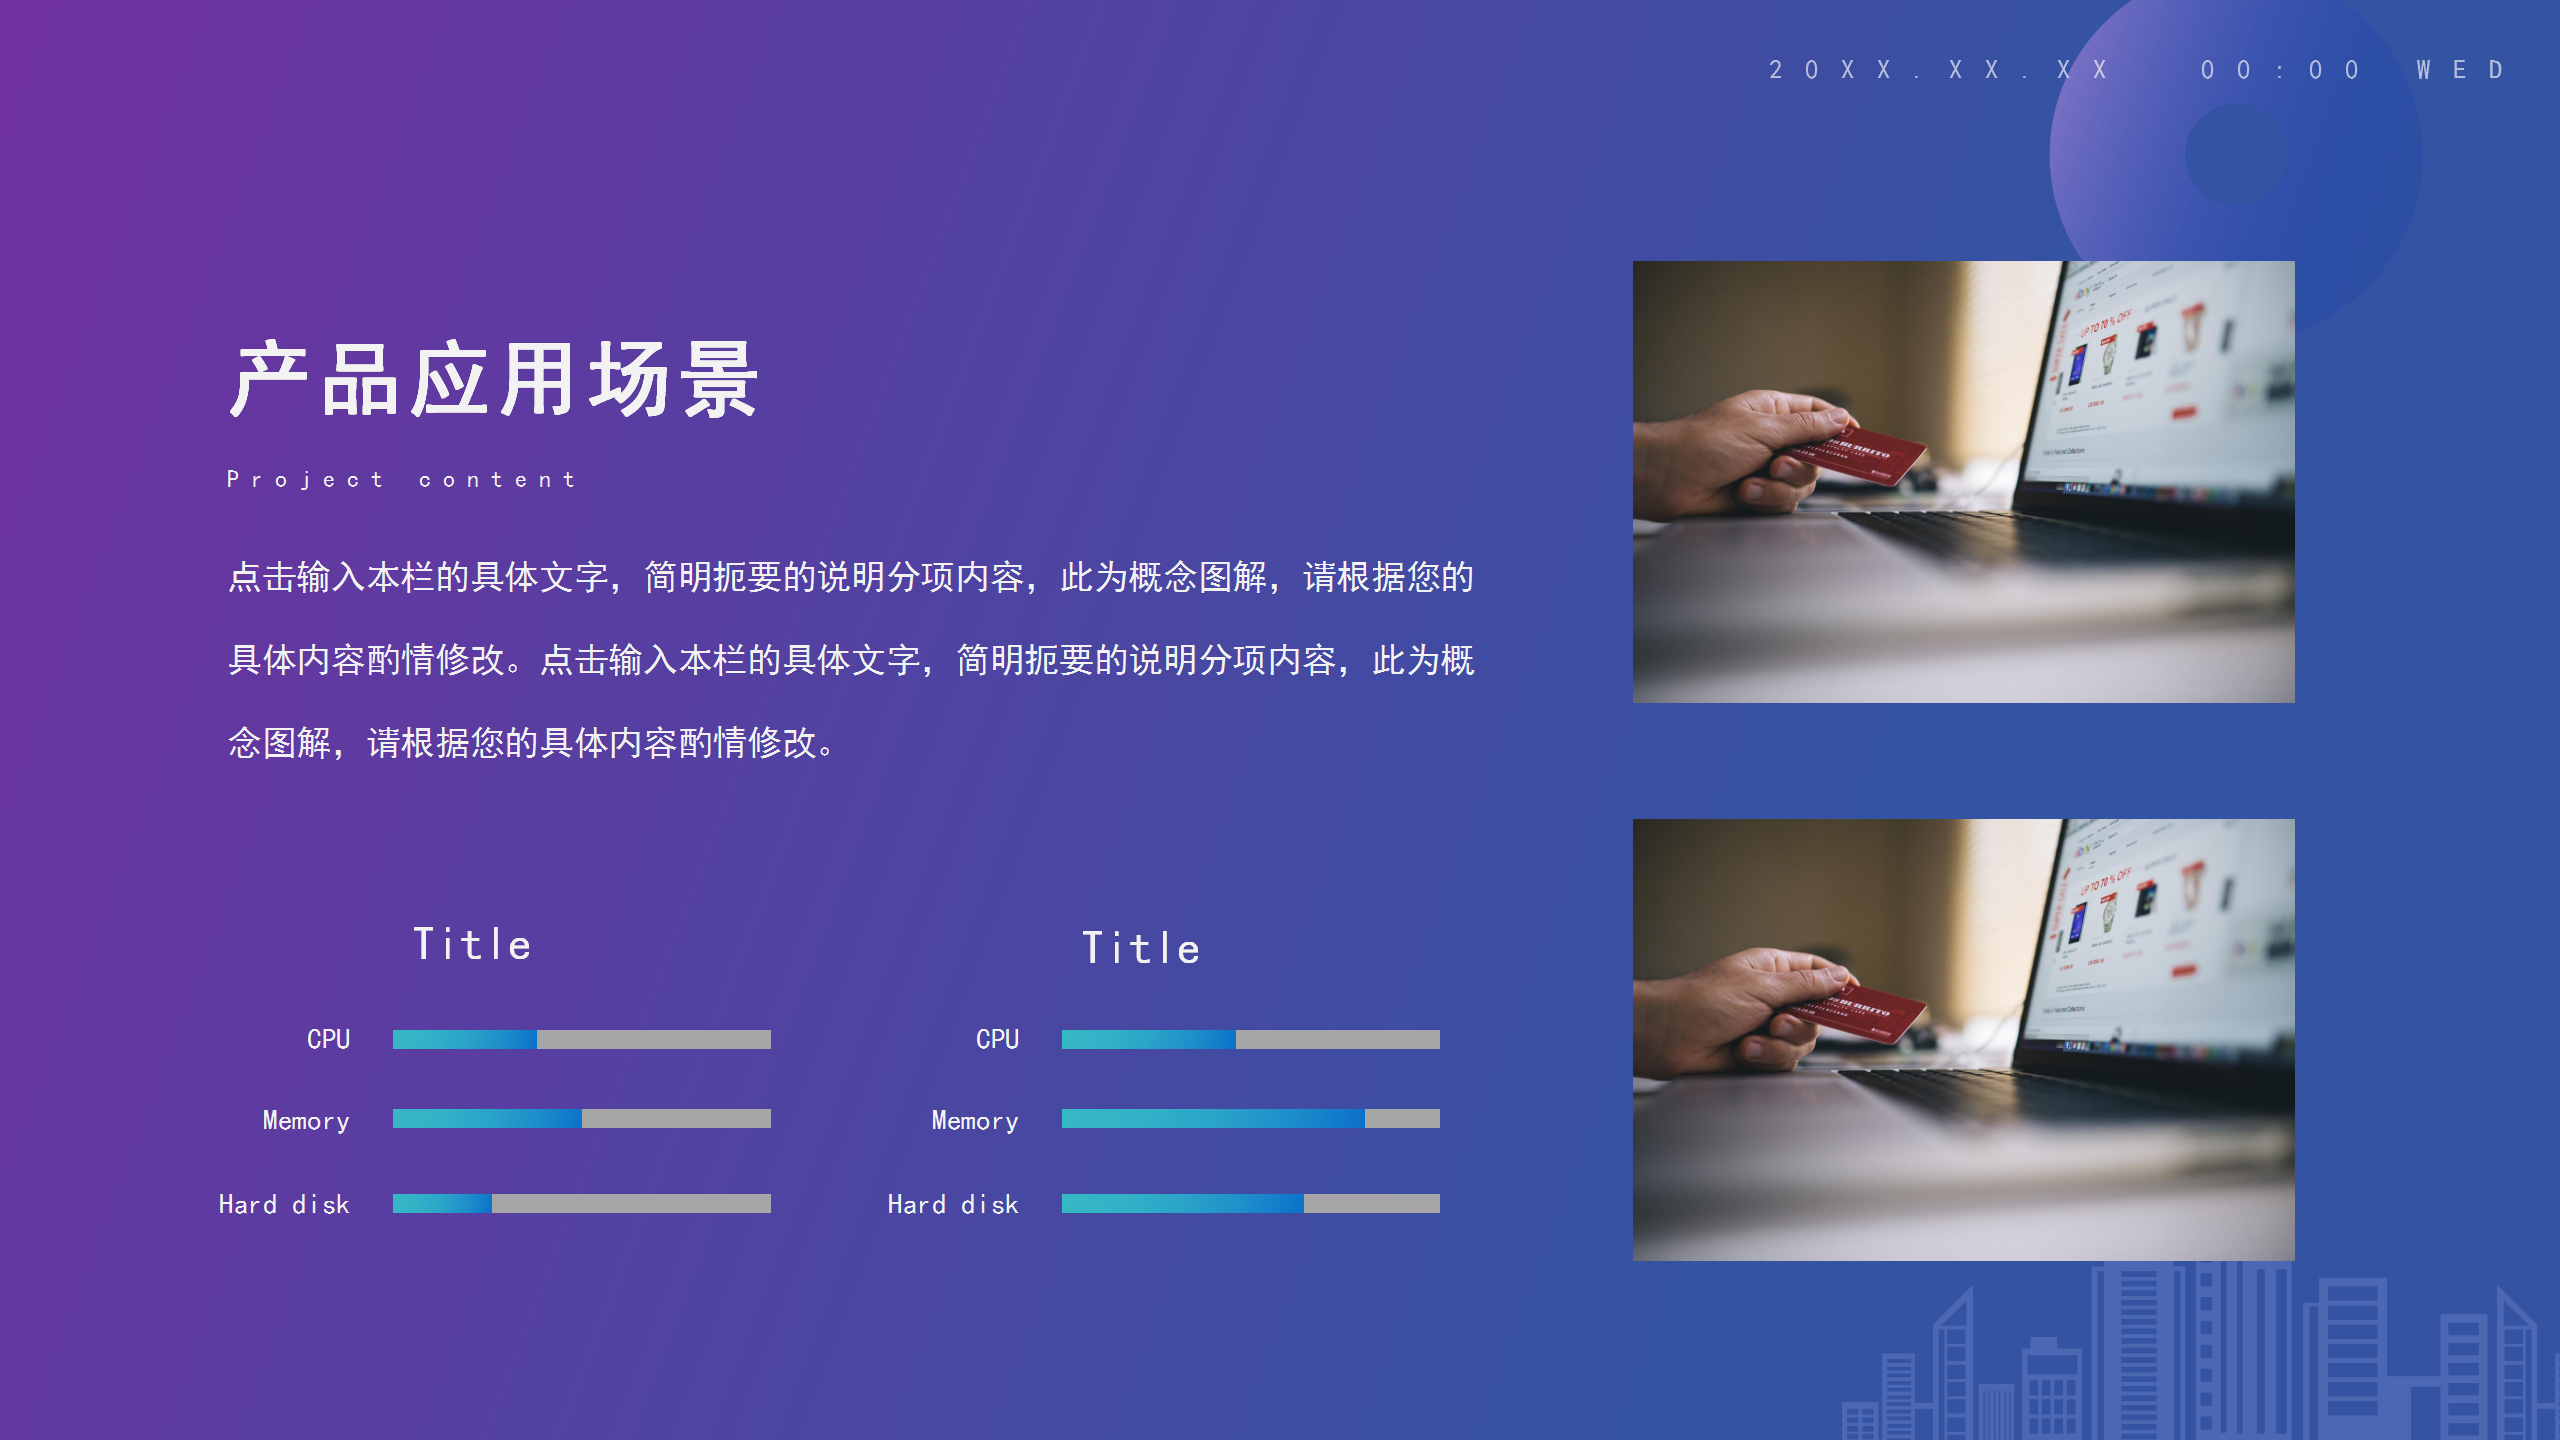 紫色商務大氣網絡營銷項目方案教育課件PPT模板